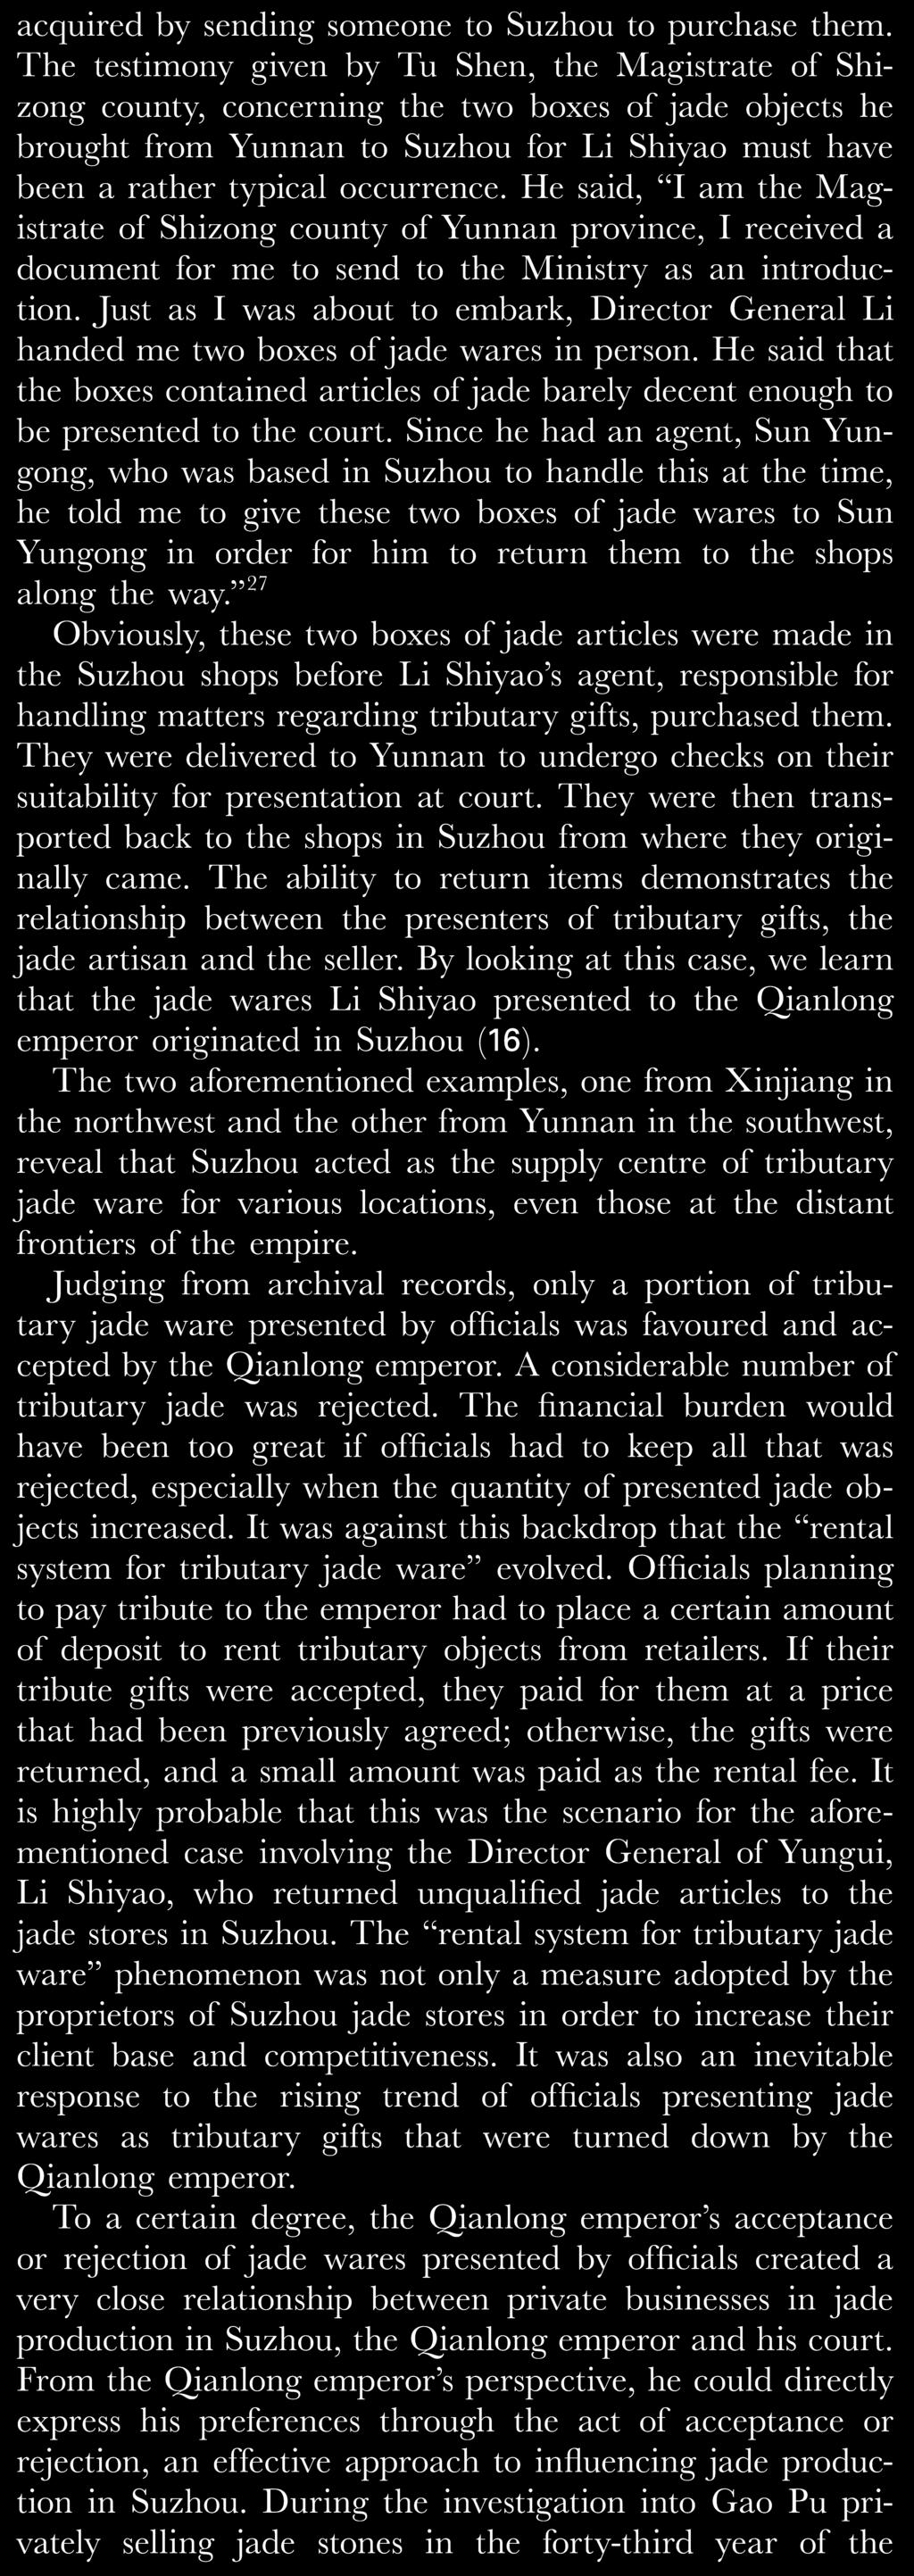 Qianlong reign records that tributary gifts to the Qianlong emperor from Li Shiyao,